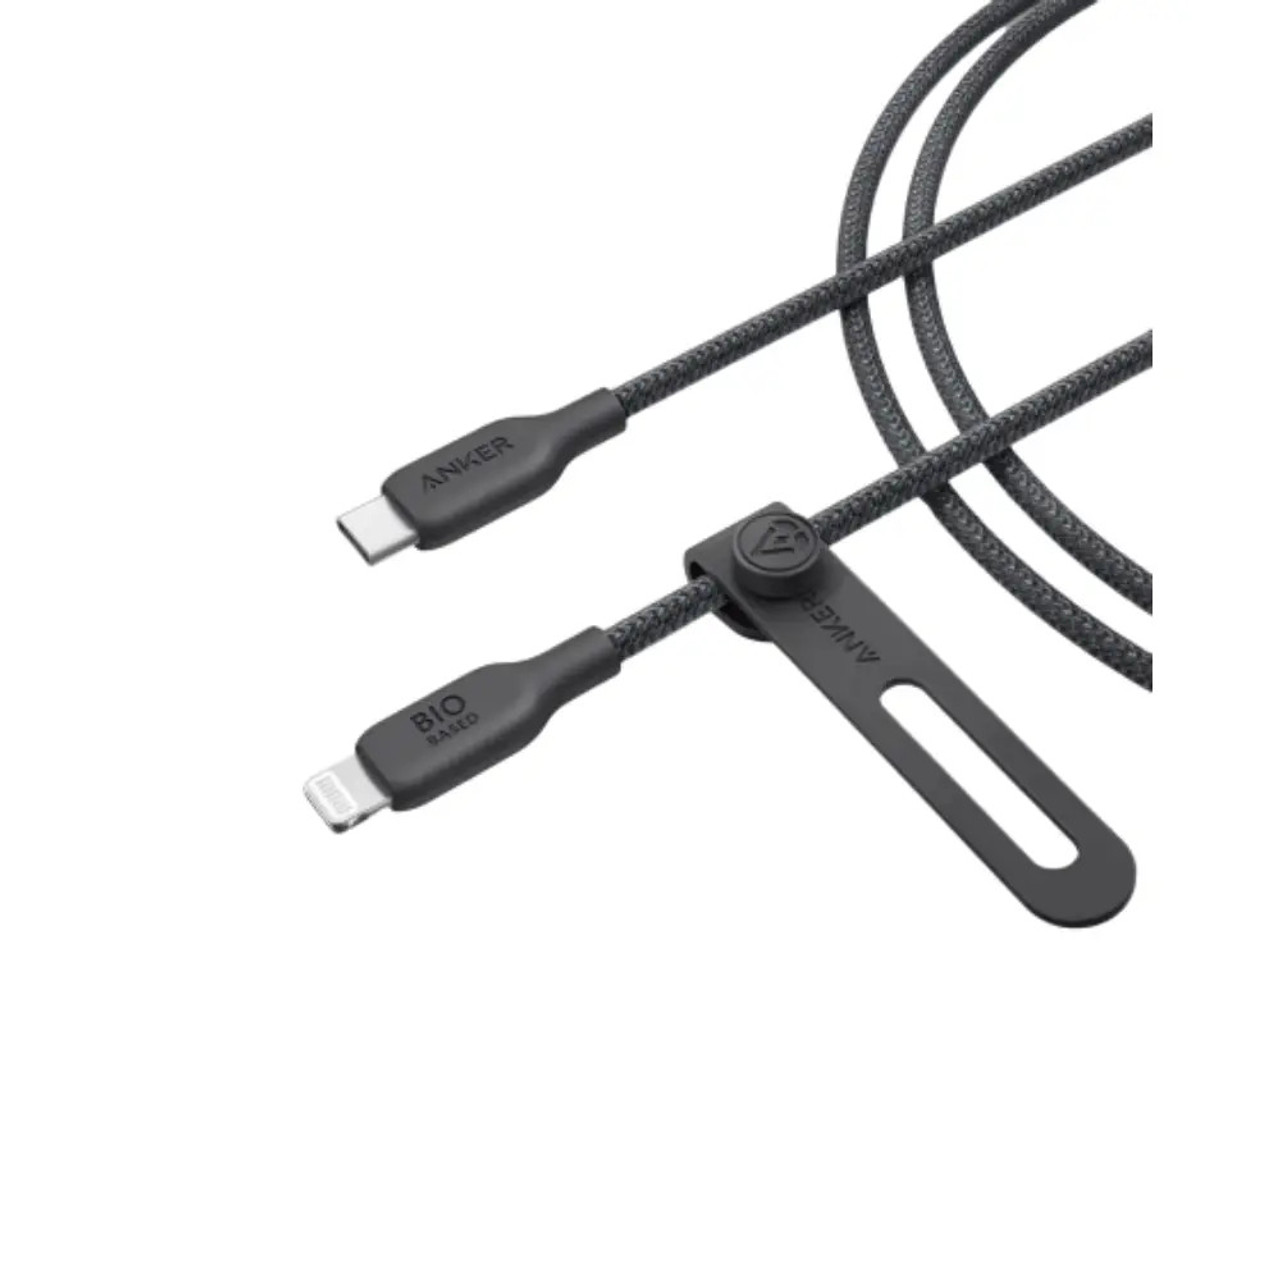 Anker 542 USB-C to Lightning Cable Bio-Nylon 3ft B2B - UN Black, A80B5H11-BK, AYOUB COMPUTERS